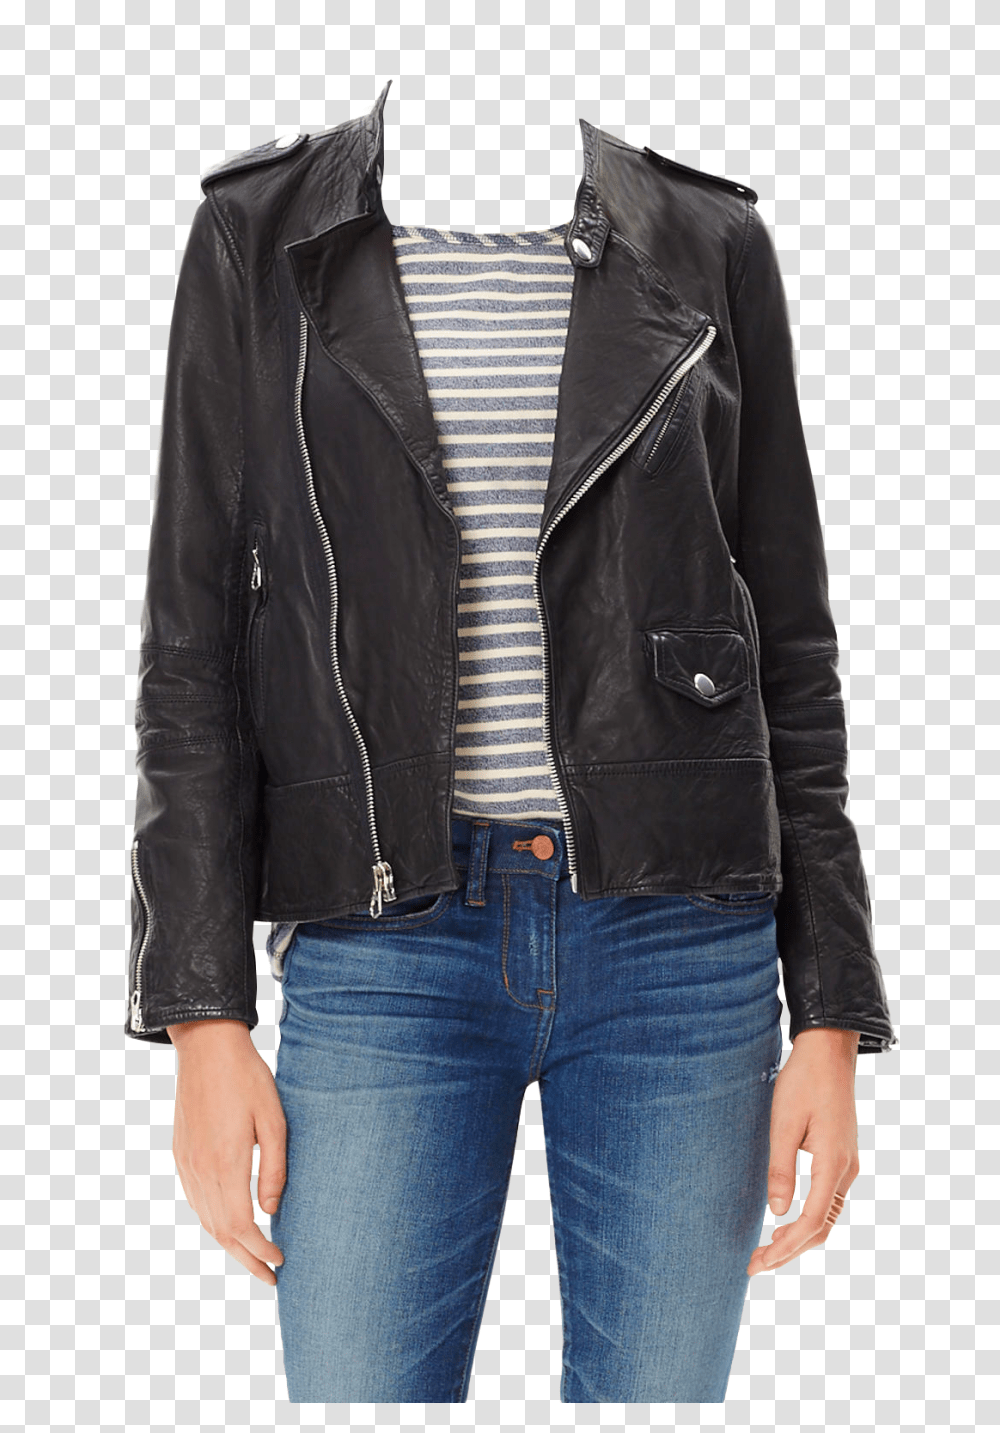 Girl Jacket Image, Apparel, Coat, Leather Jacket Transparent Png